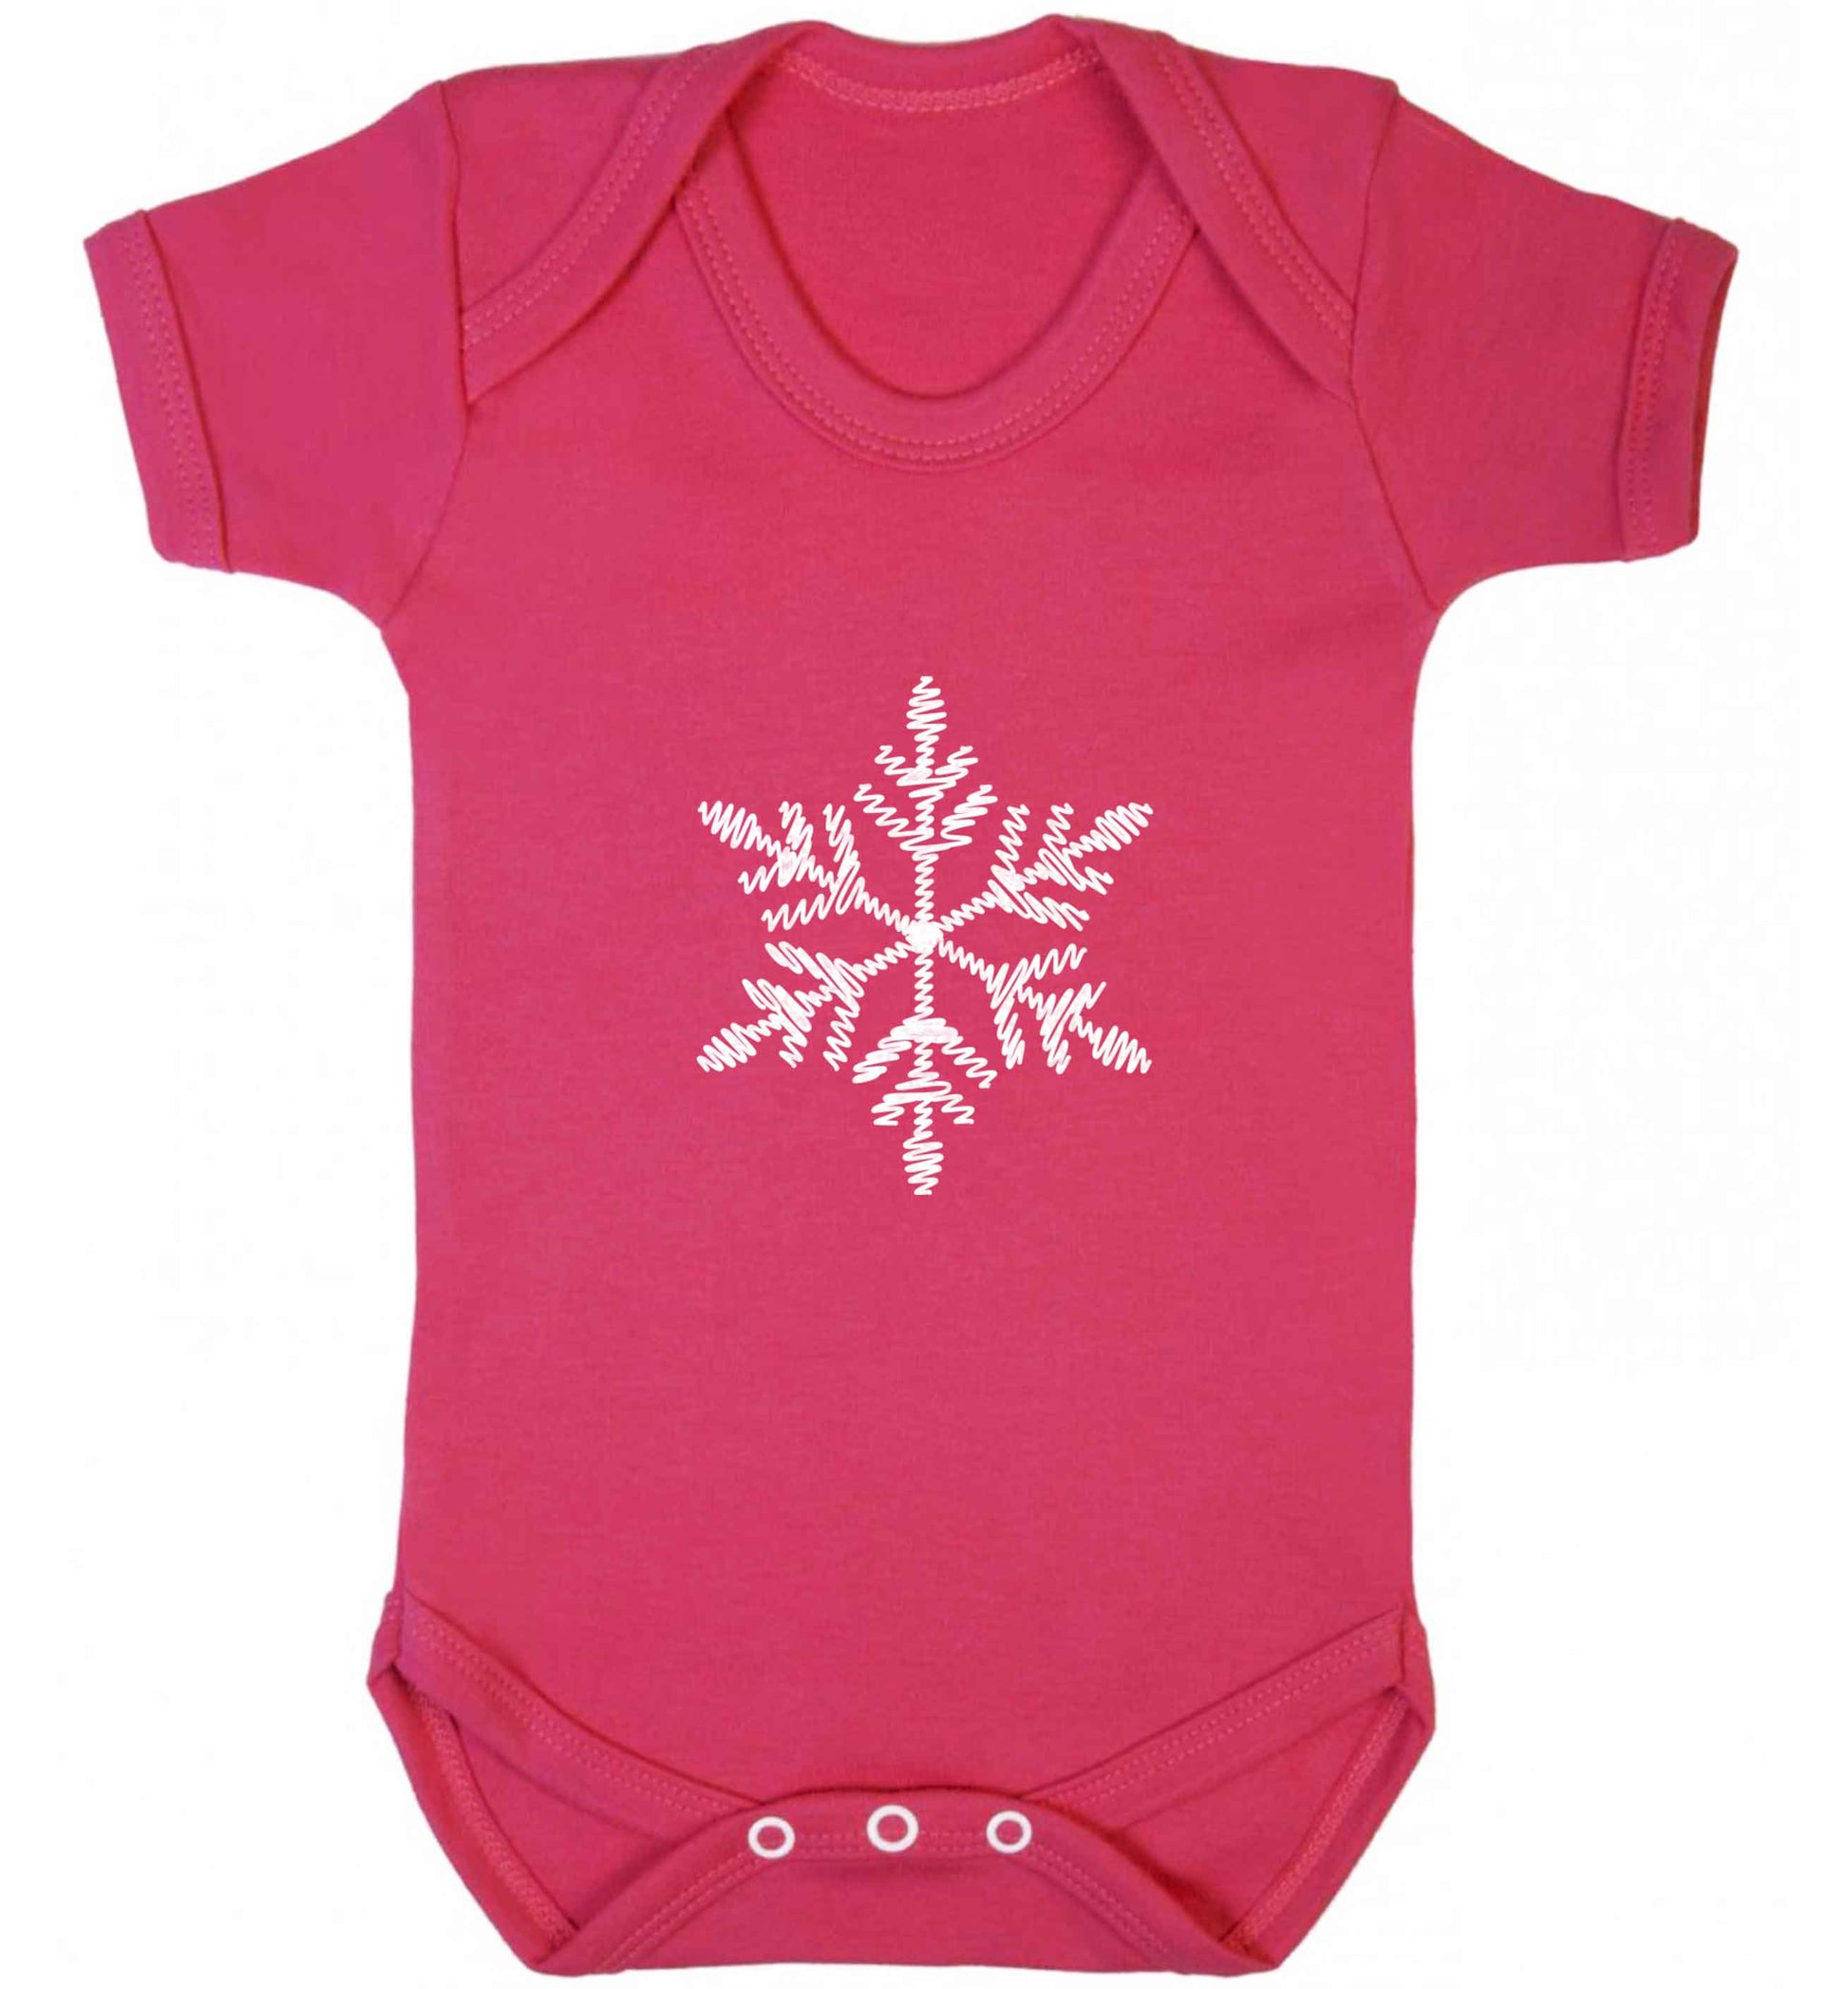 Snowflake baby vest dark pink 18-24 months